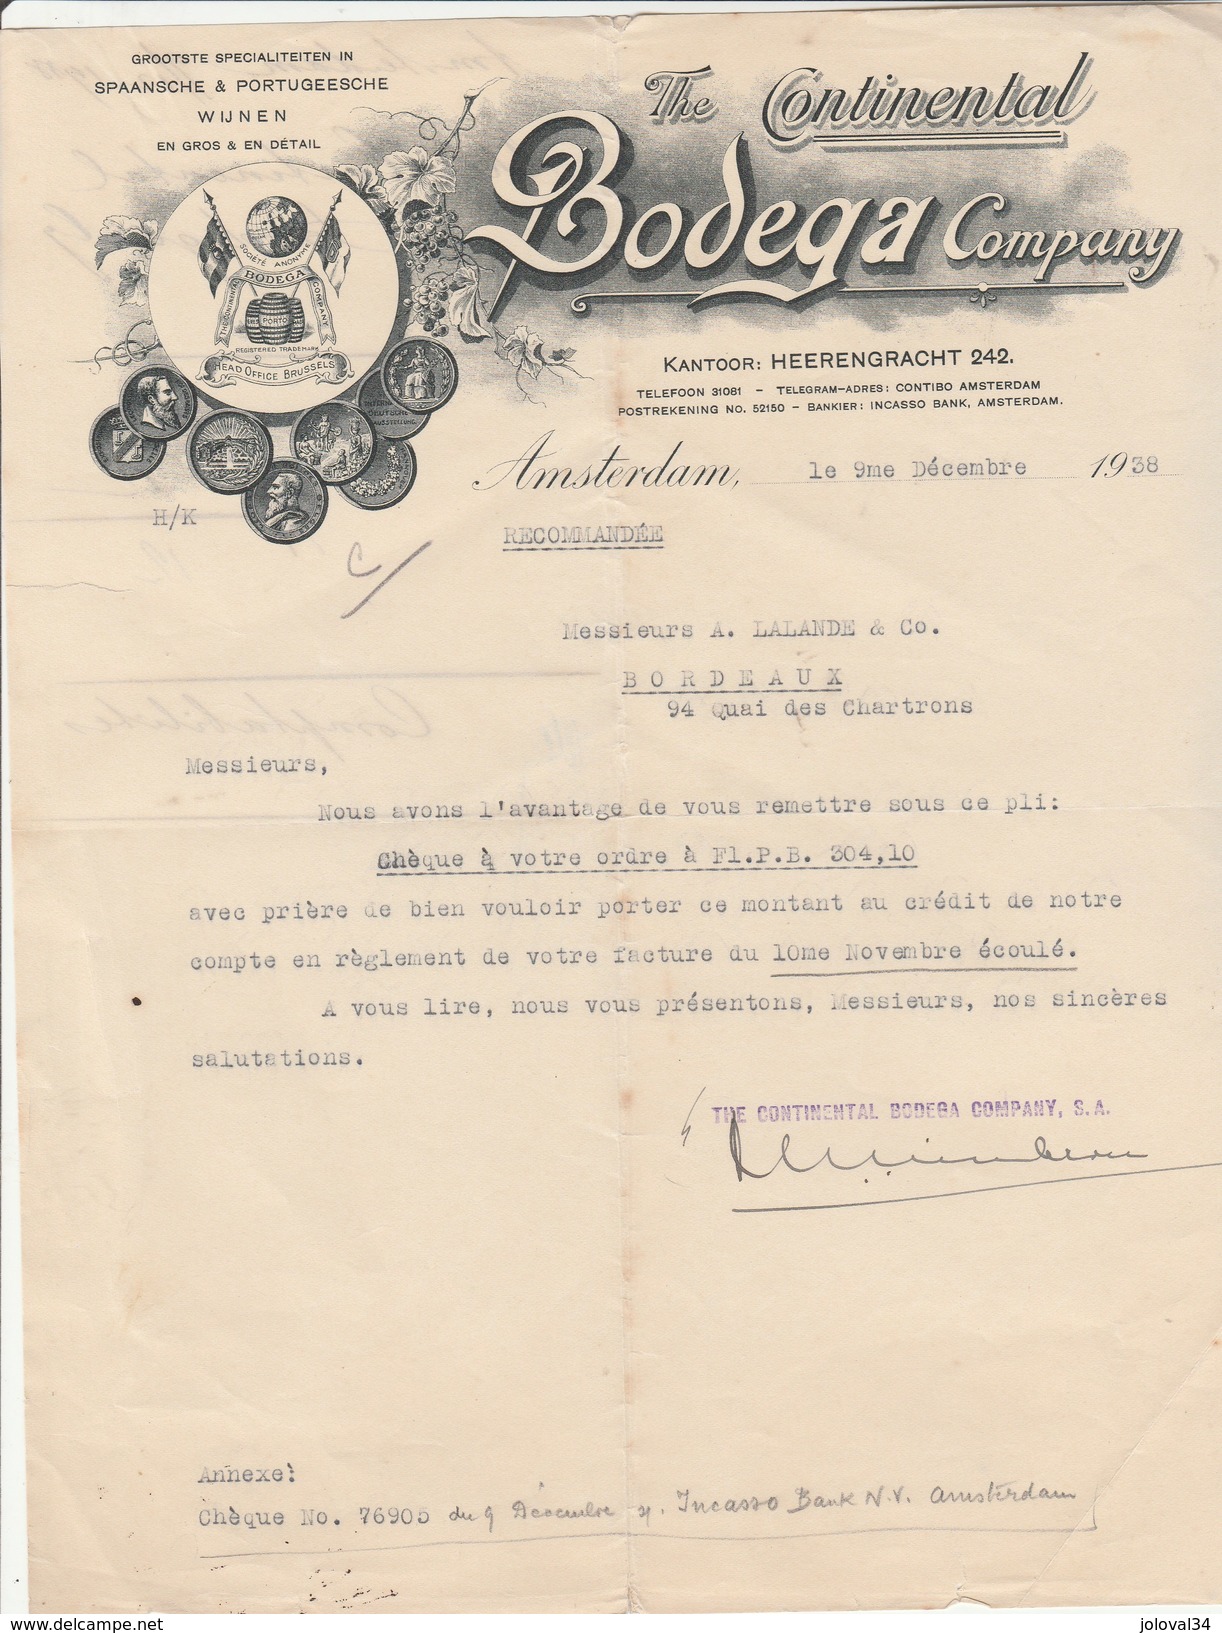 Lettre Illustrée 9/12/1938 The Continental BODEGA Company AMSTERDAM Pays Bas - Vin Espagnol Et Portugais - Pays-Bas